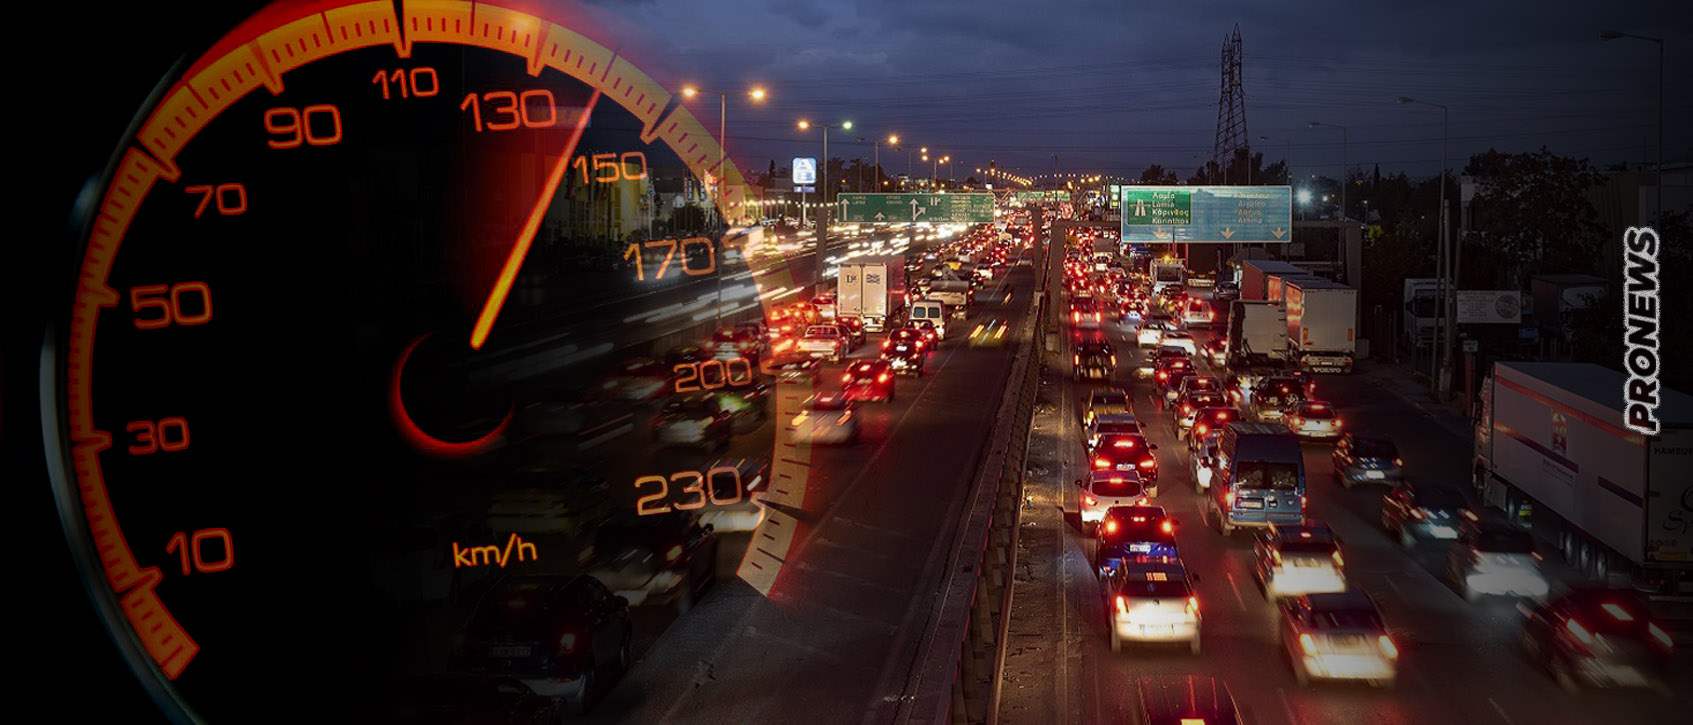 Αλλάζουν τα όρια ταχύτητας στους δρόμους για την… «κλιματική αλλαγή»: Ποια θα είναι τα νέα όρια